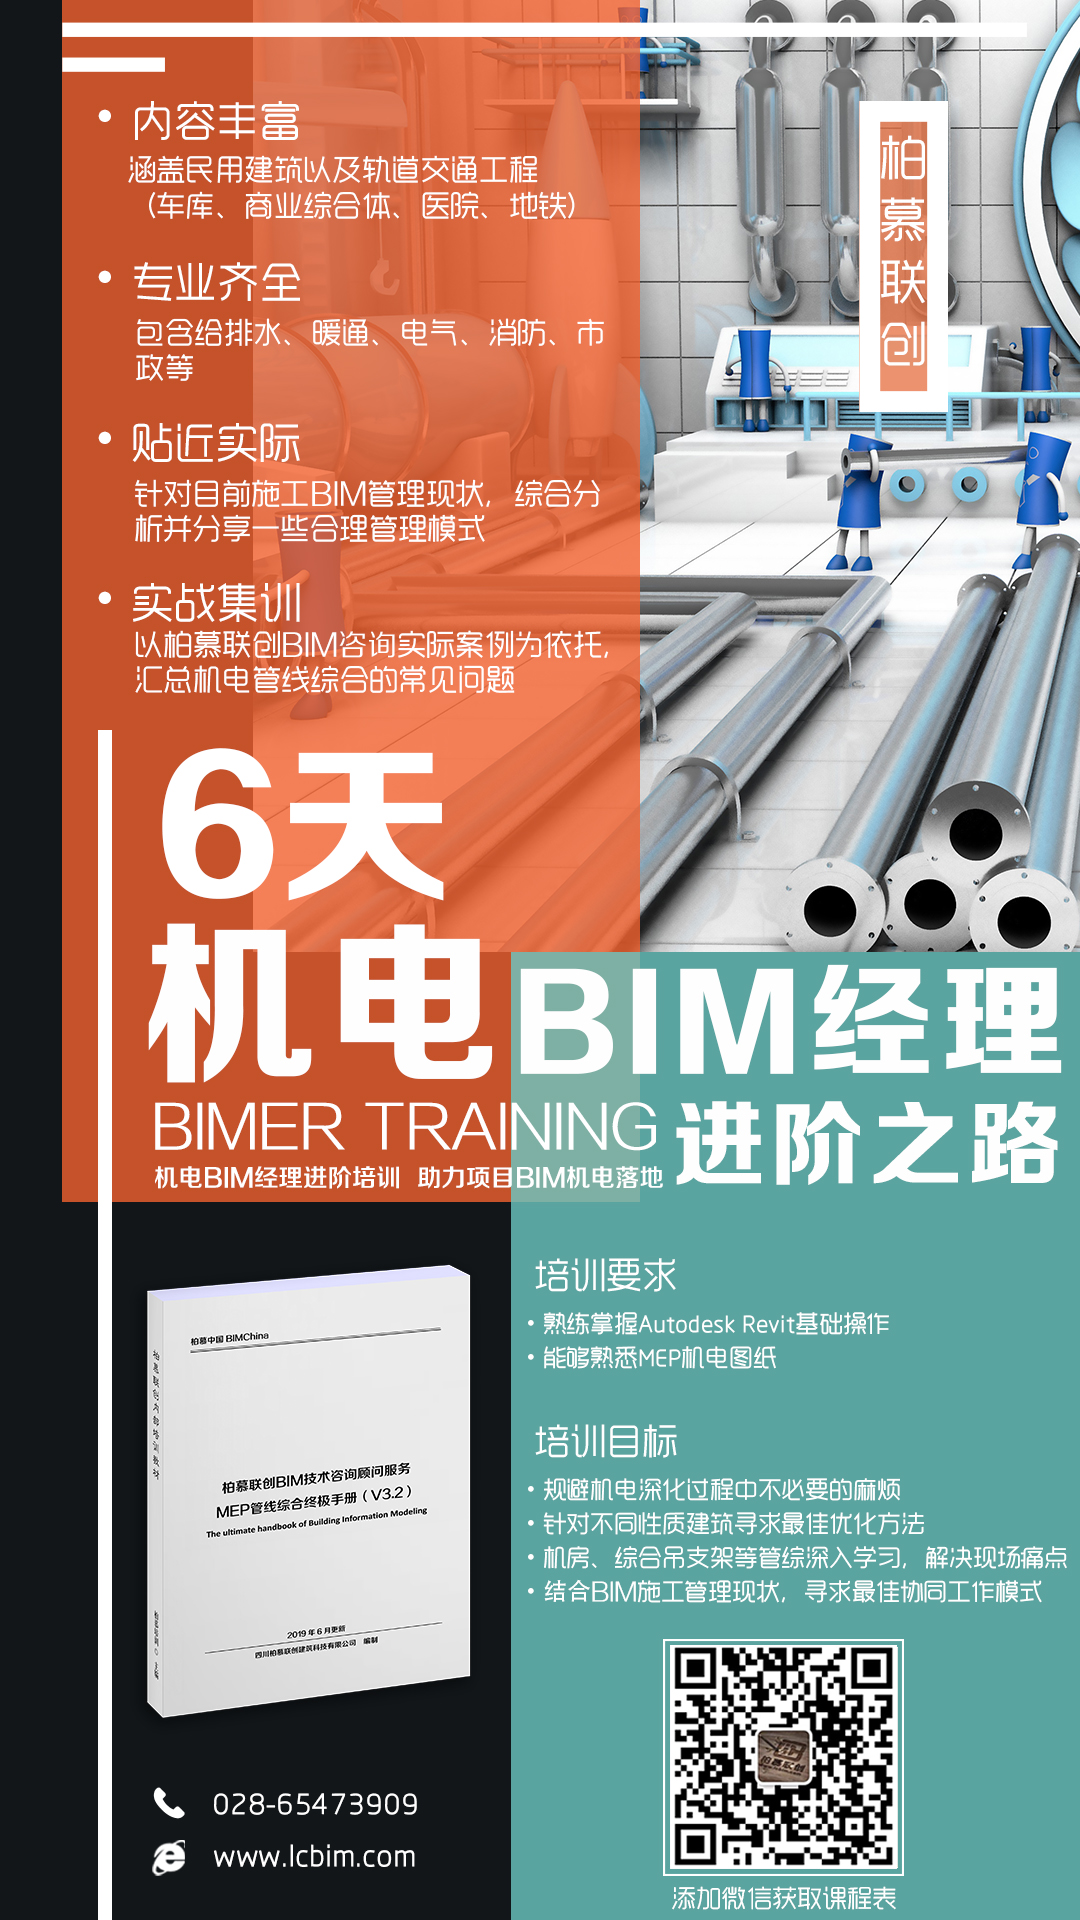 機電BIM實戰課程-小編.jpg